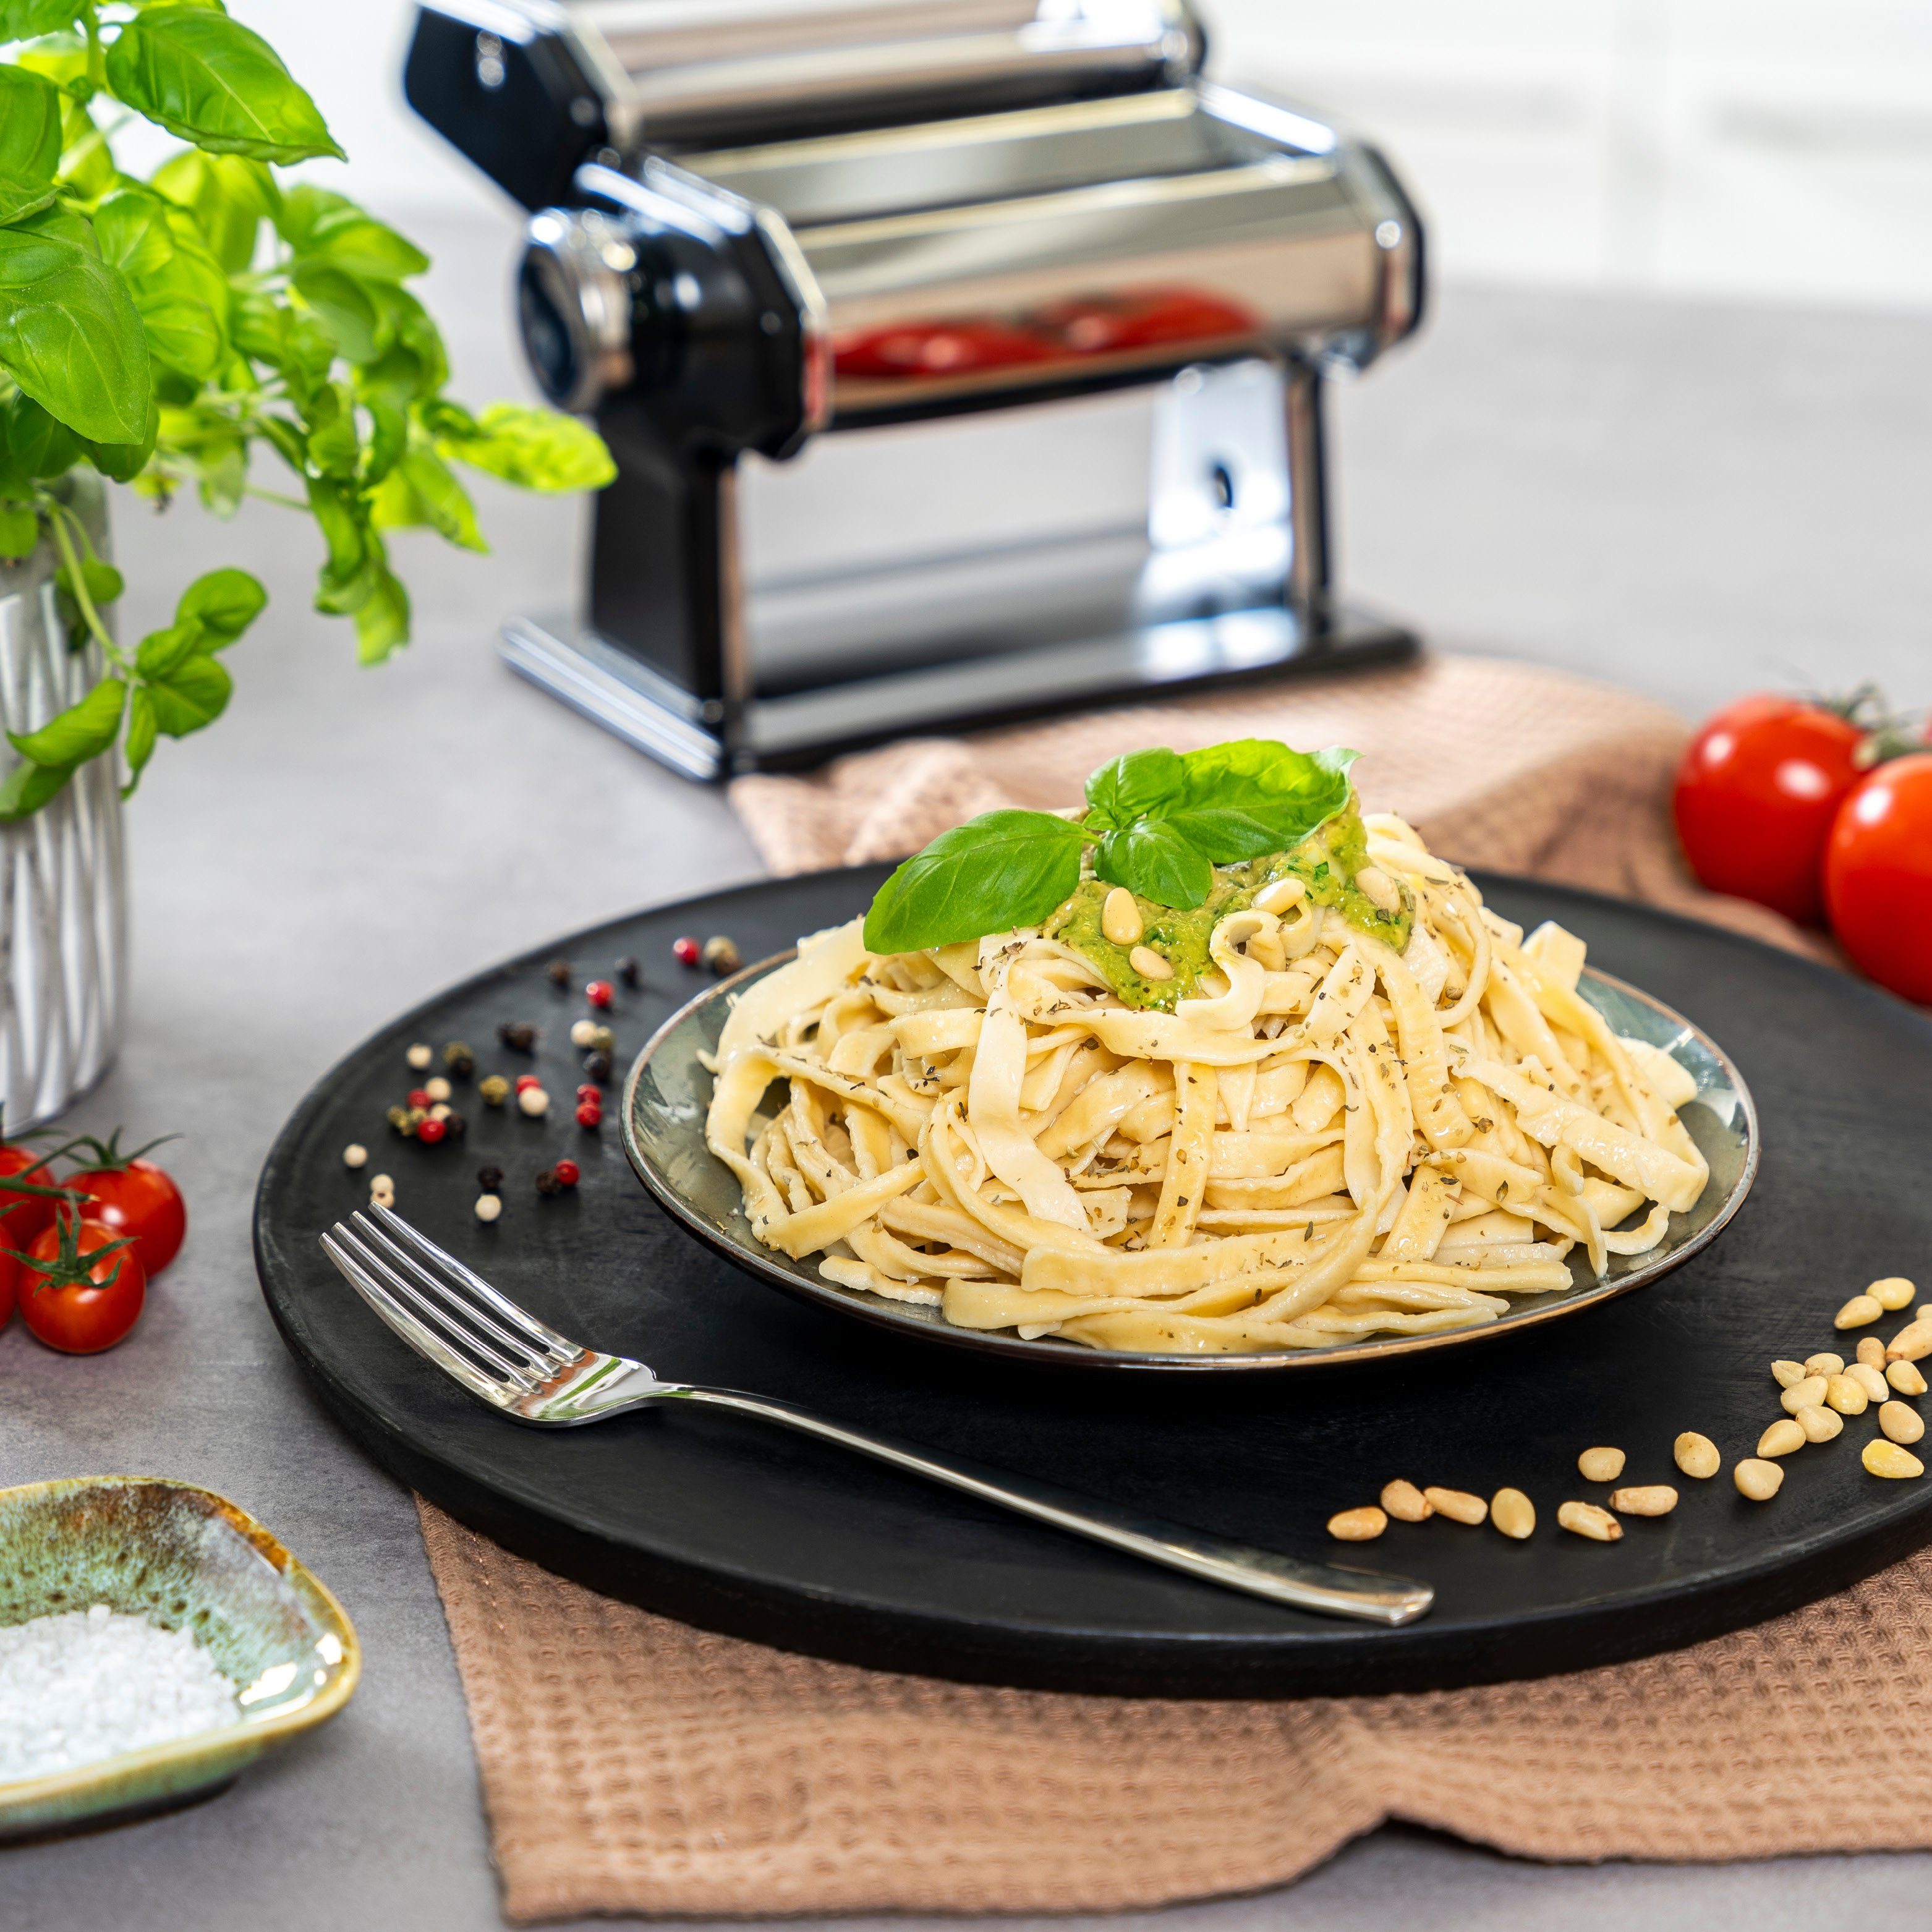 bremermann Nudeltrocker und Spaghetti, Set, als 7 Pasta Nudelmaschine inkl. Lasagne Edelstahl für Stufen,